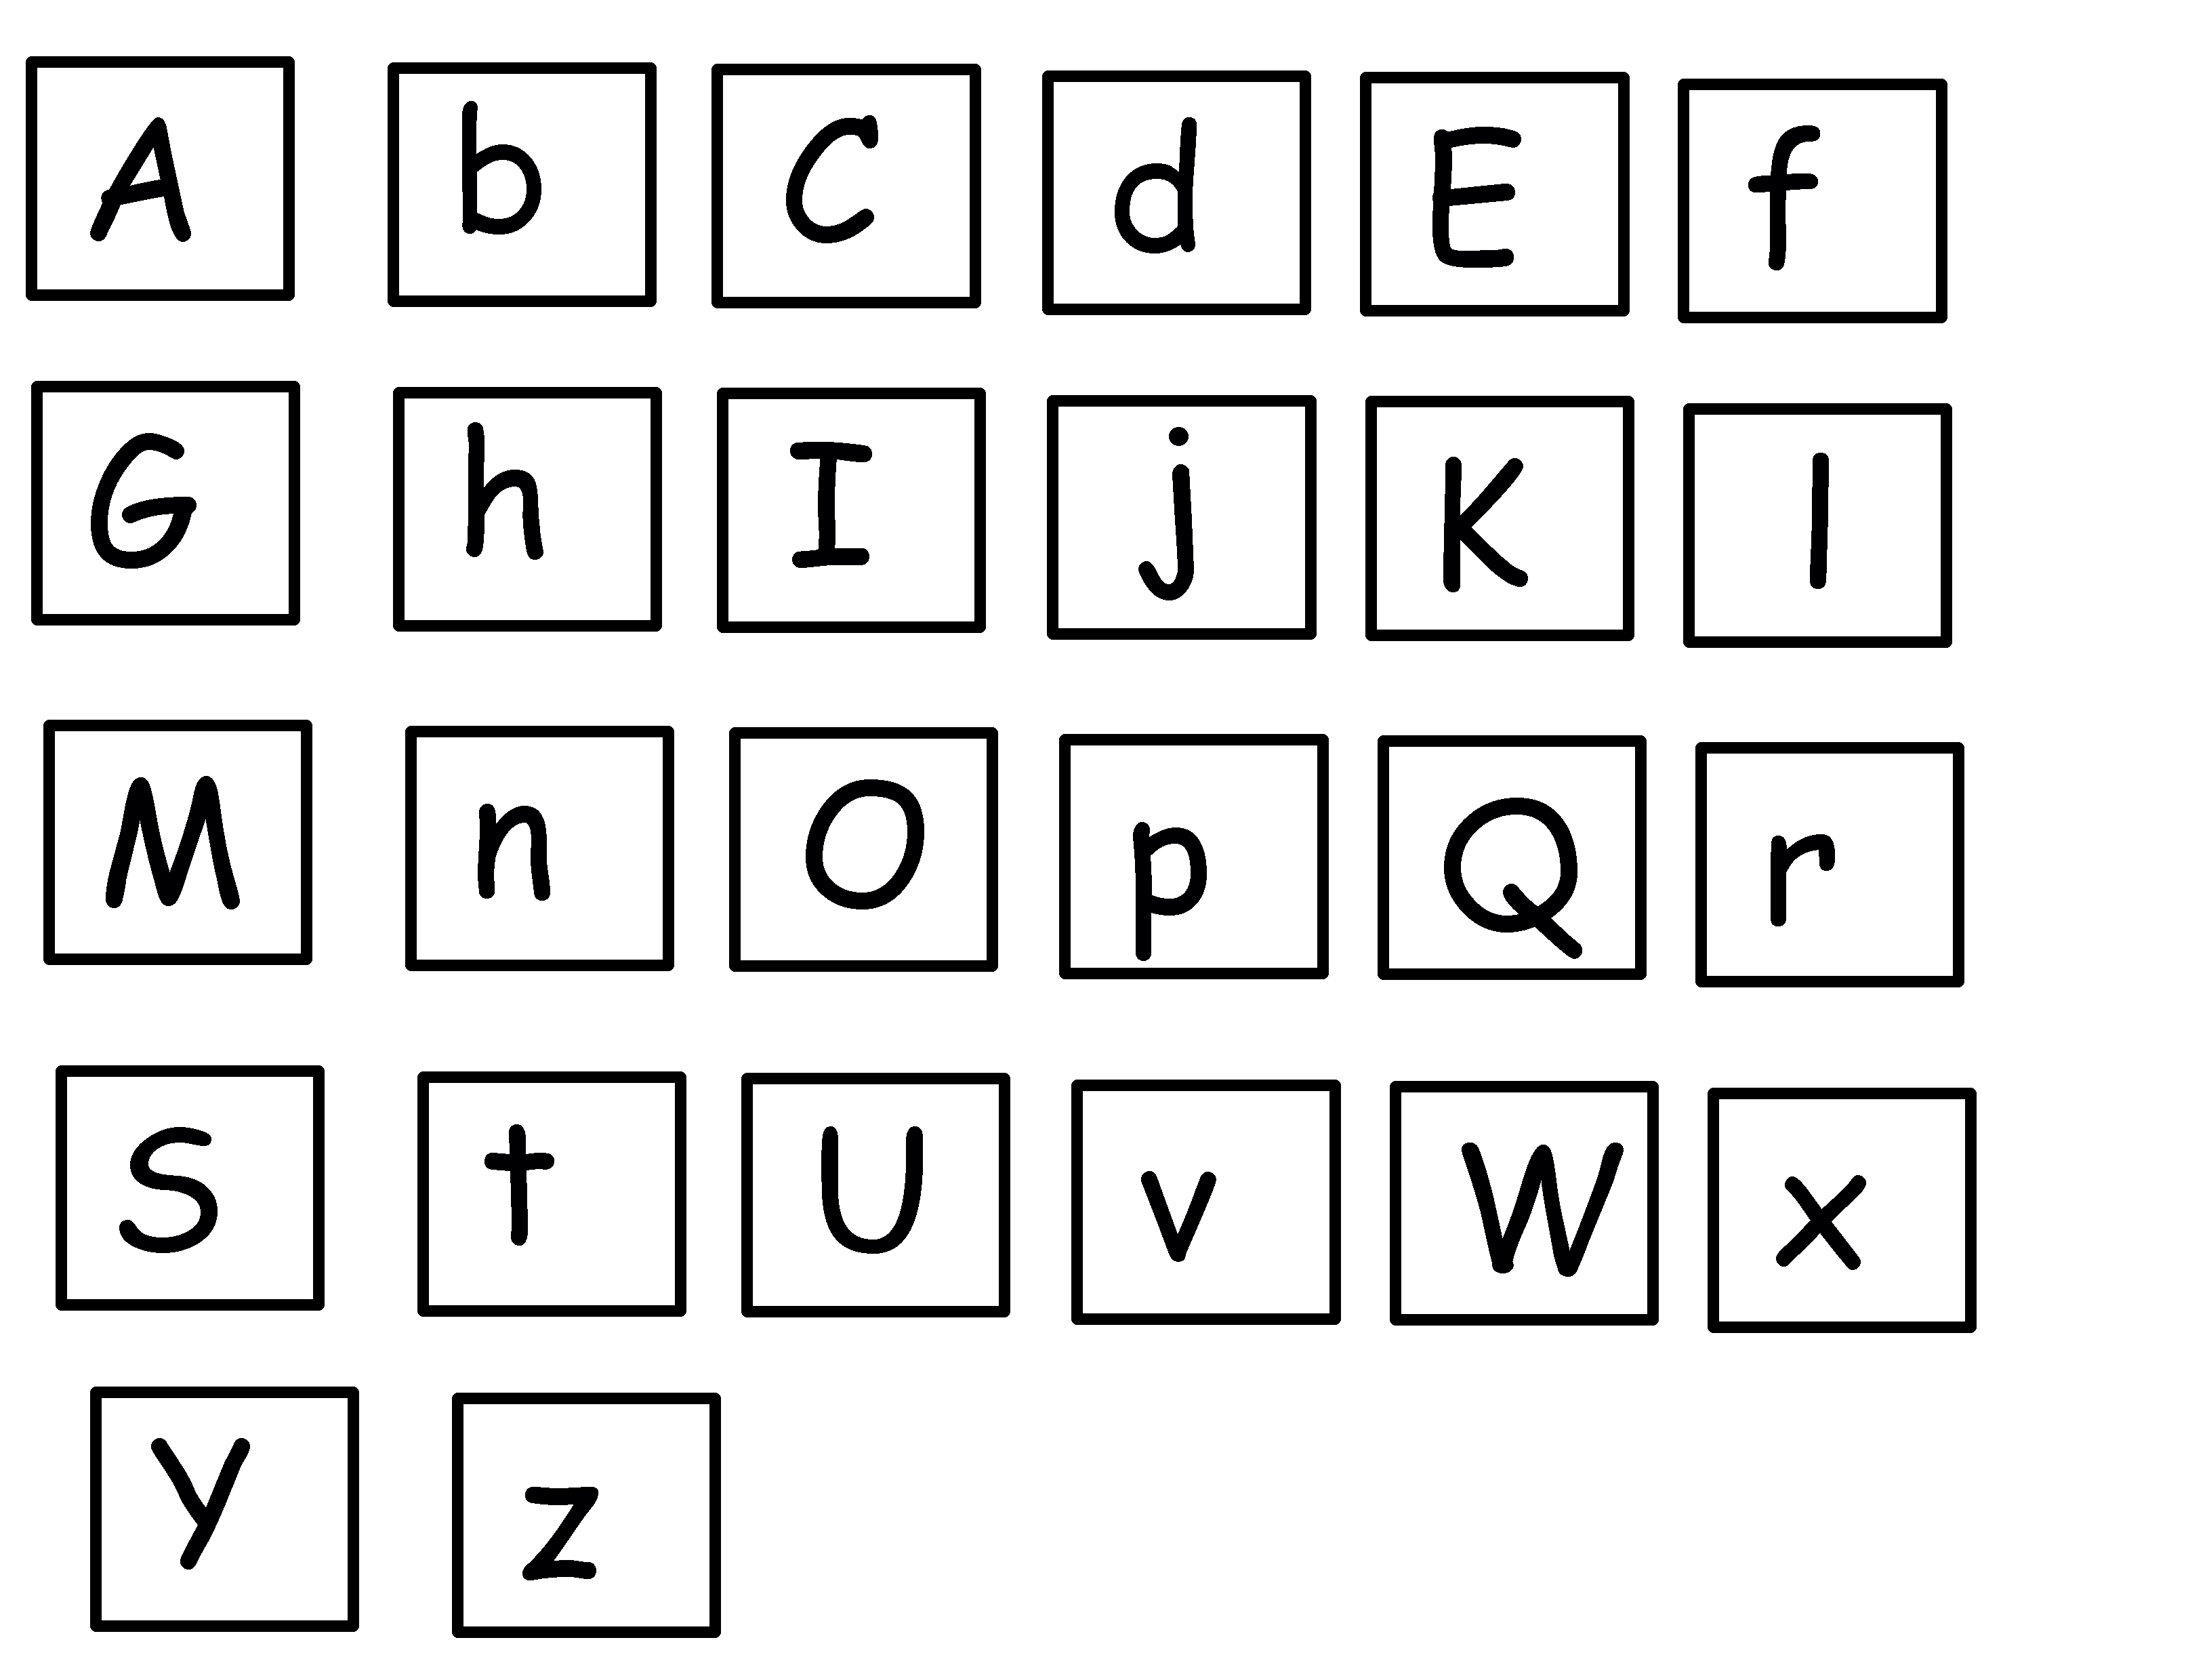 14-alphabet-fun-worksheets-worksheeto